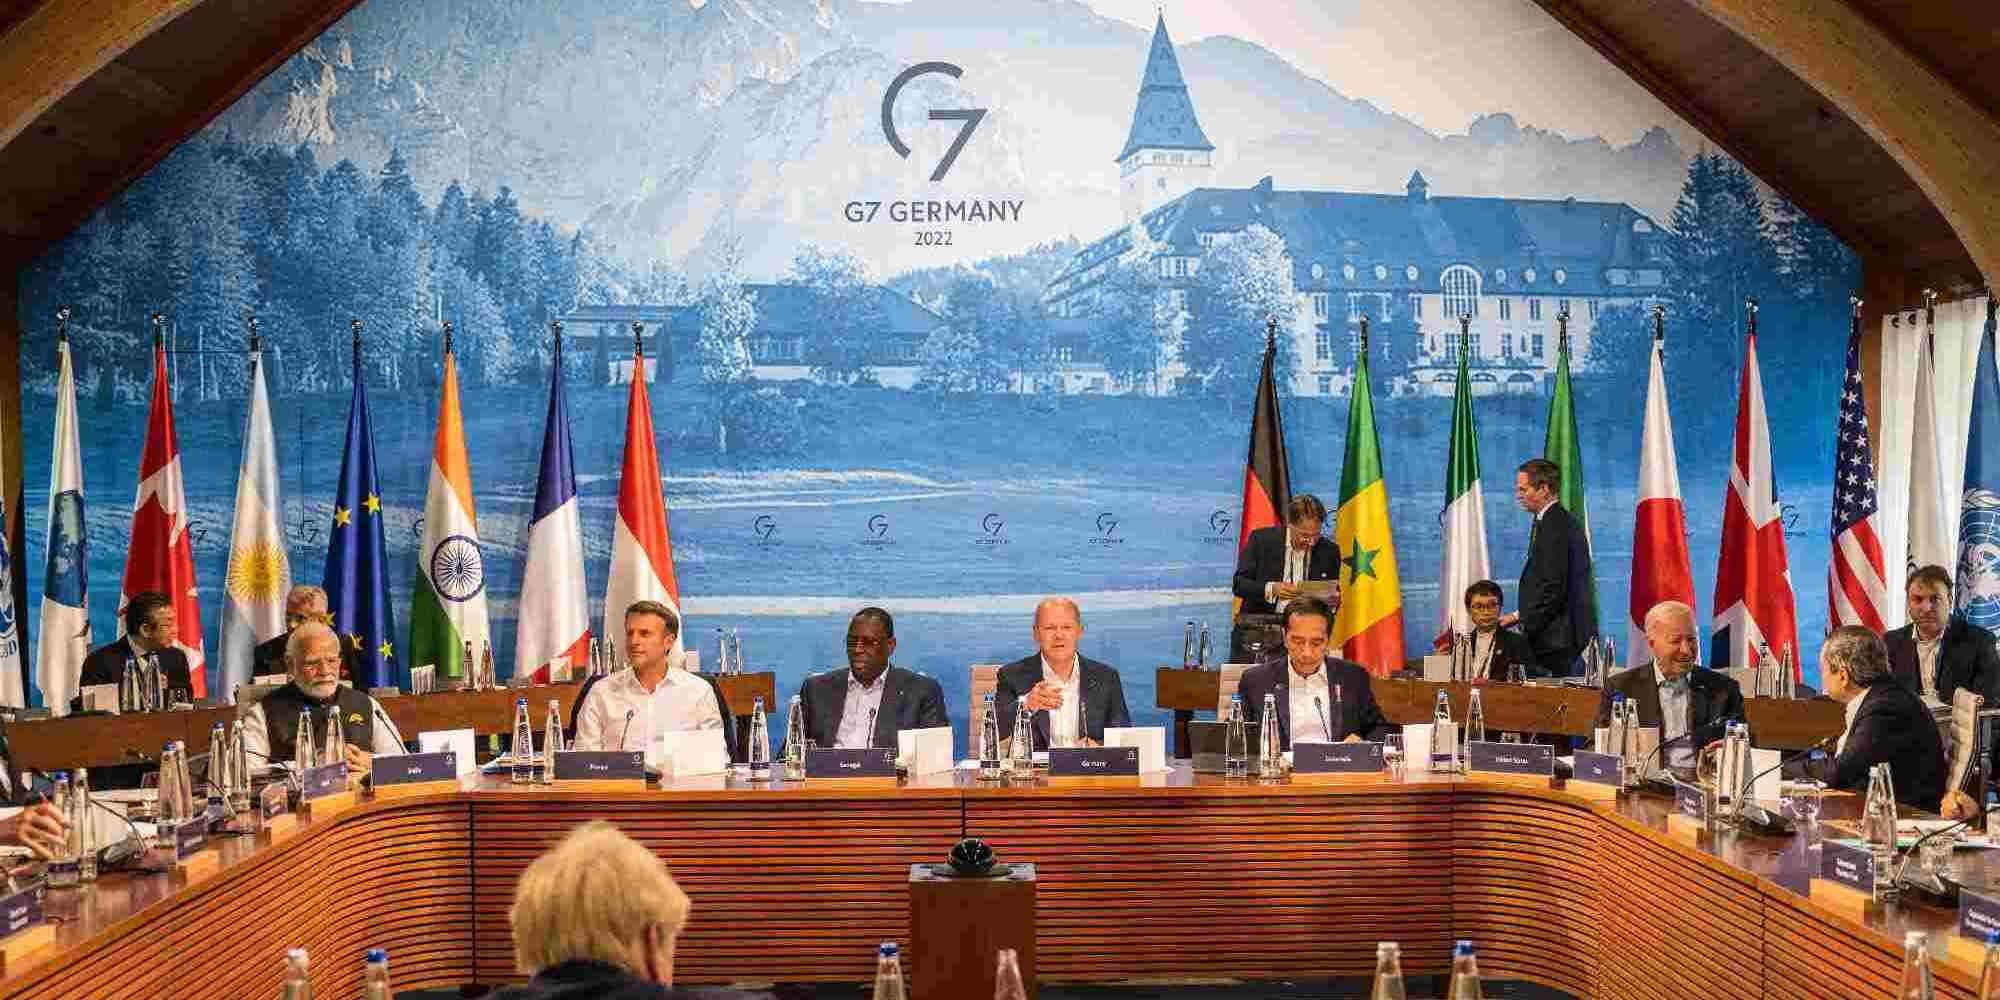 Οι εργασίες της G7 την δεύτερη ημέρα στην Γερμανία που φιλοξενεί τη σύνοδο